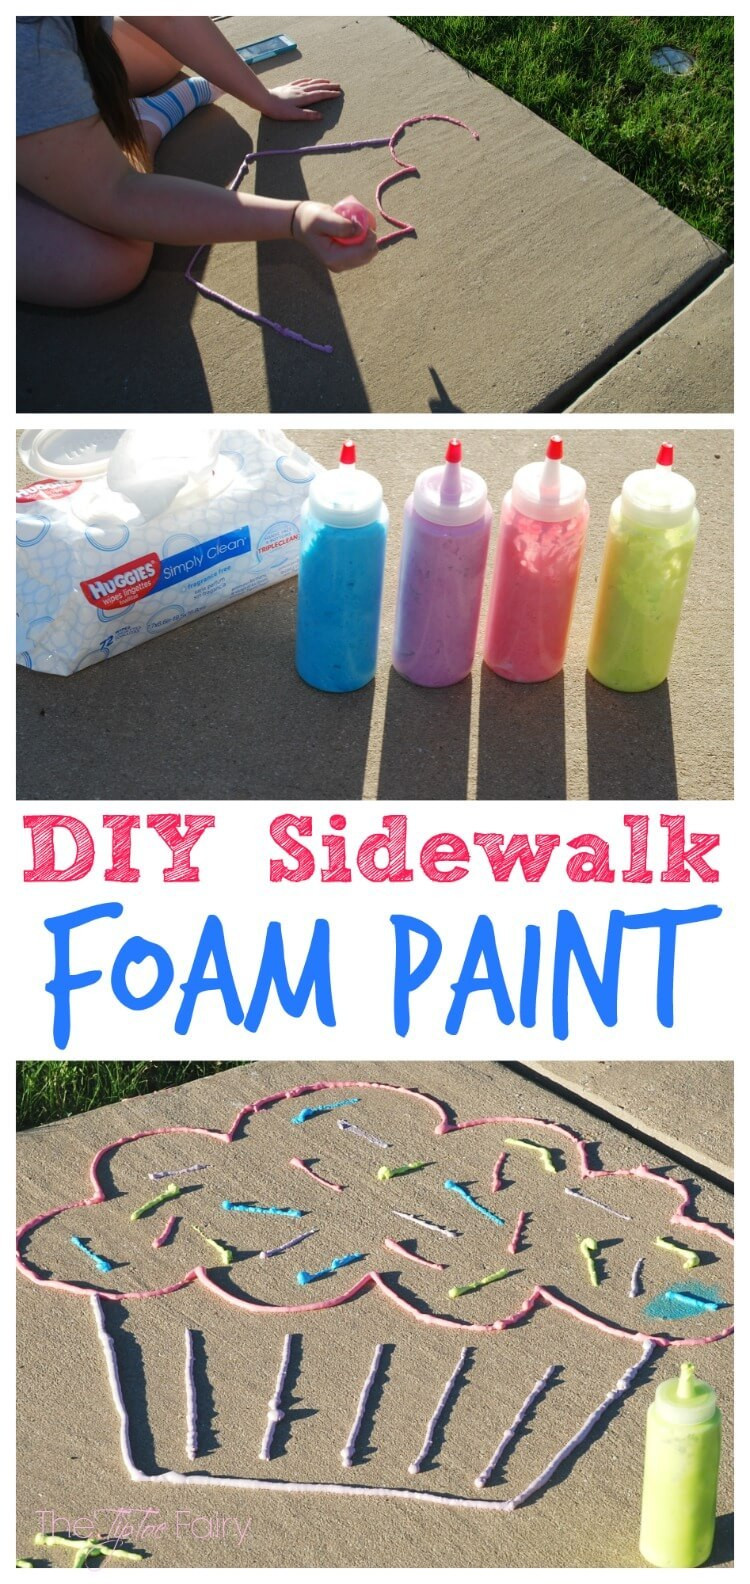 Best ideas about DIY Foam Paint
. Save or Pin DIY Sidewalk Foam Paint Now.